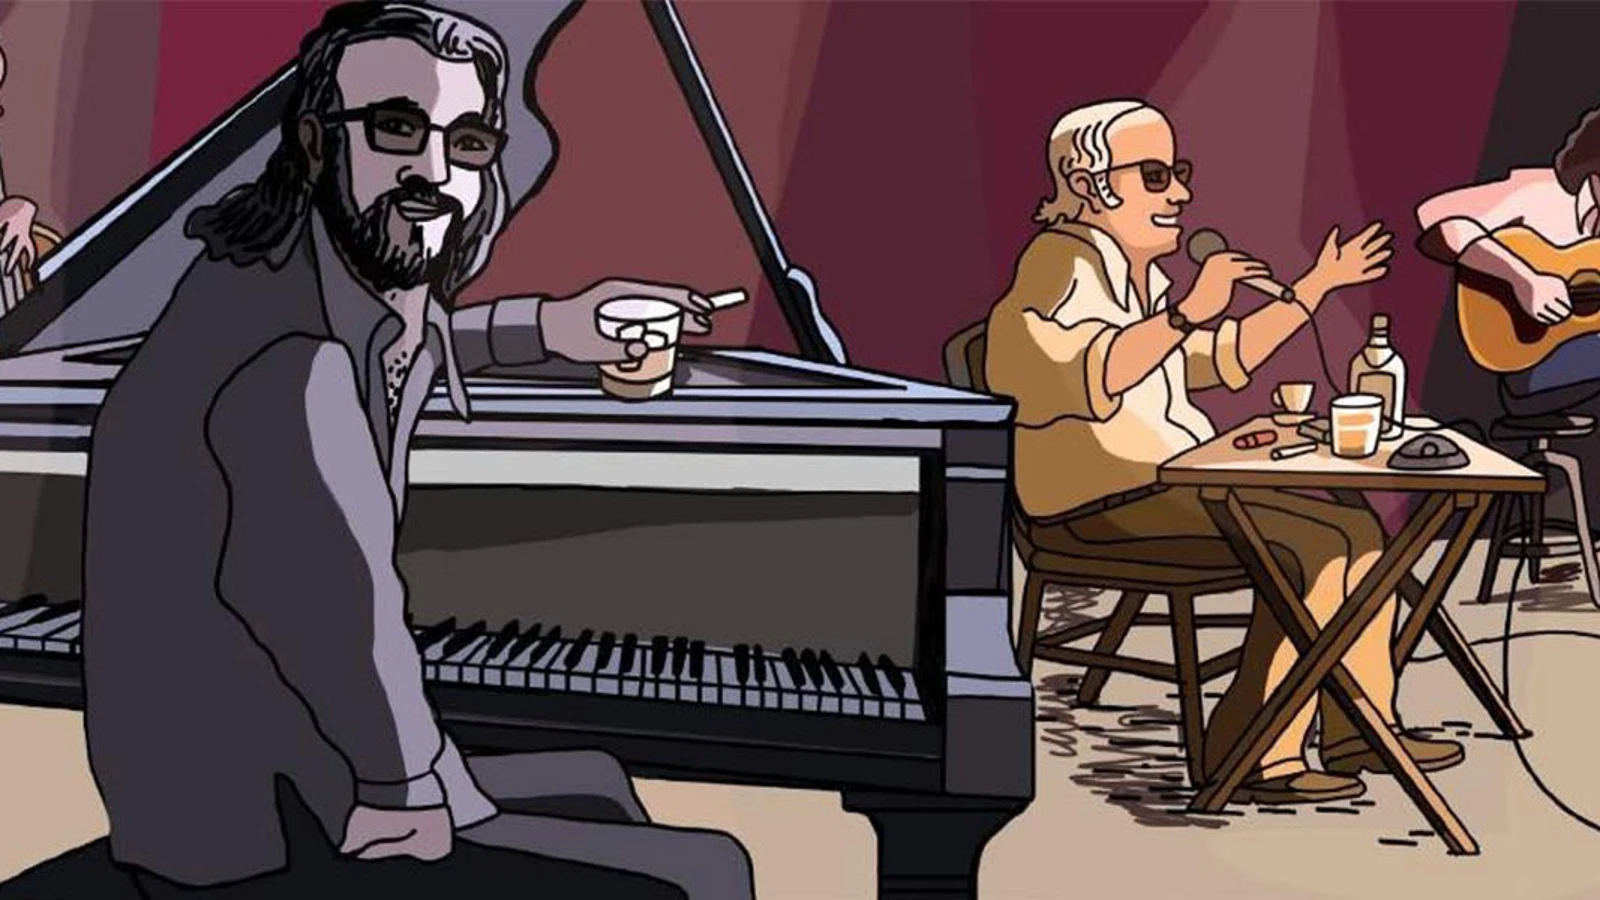 Animação mostra pianista Tenório Jr. com Vinicius de Moraes: músico sequestrado e morto pela ditadura argentina (Divulgação)